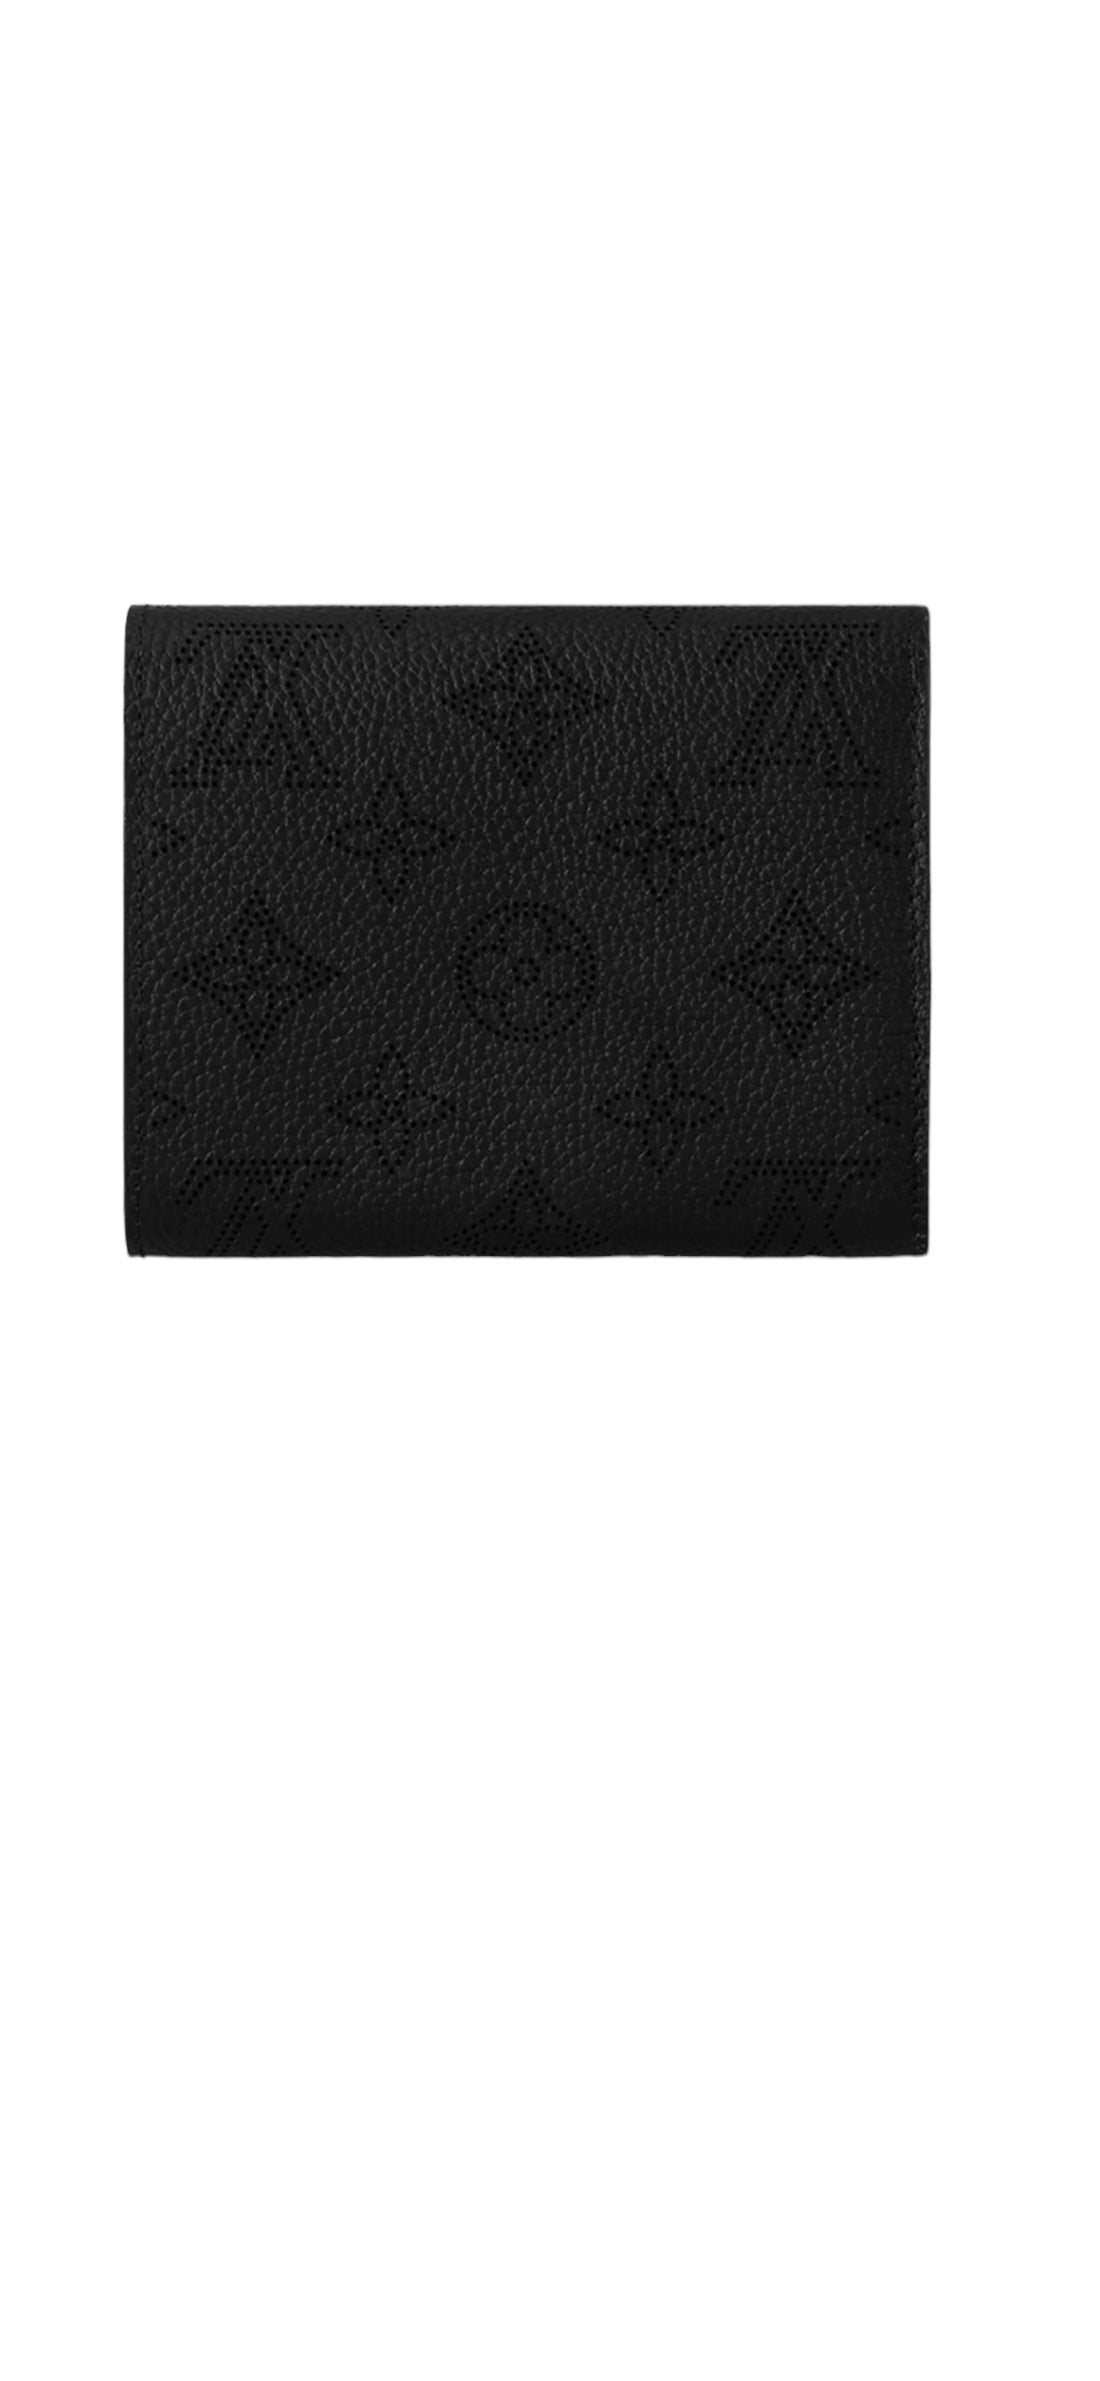 Louis Vuitton Mahina Monogram Iris Portemonnaie